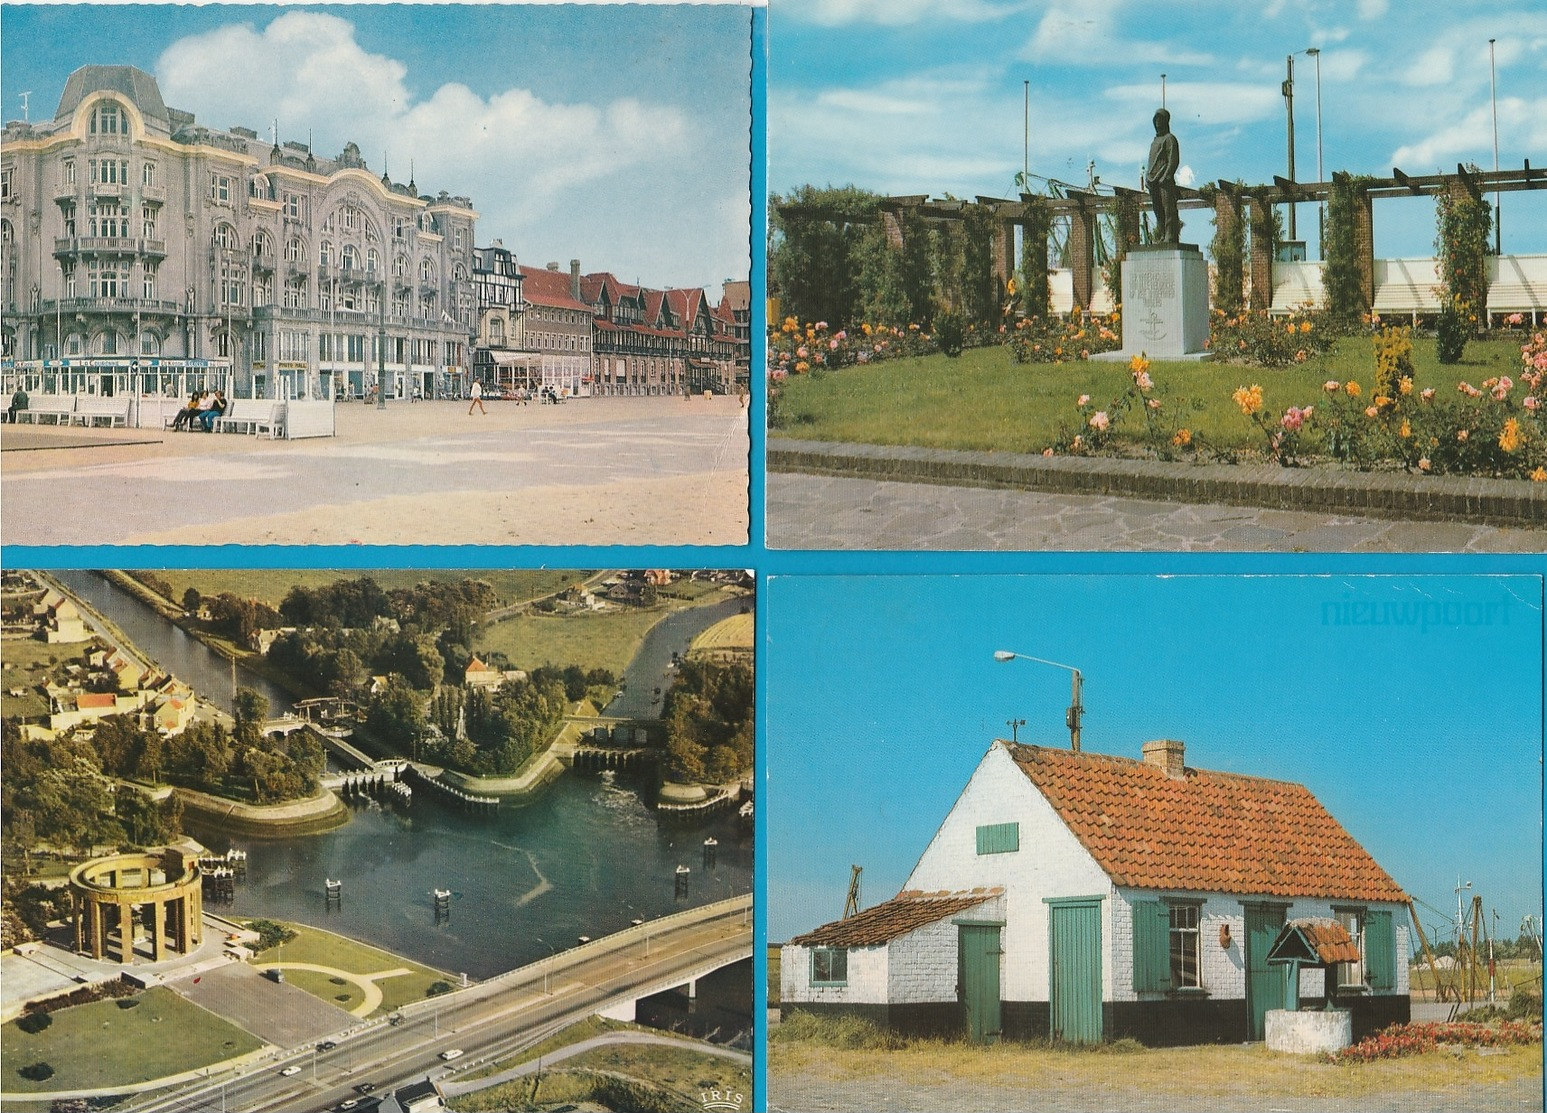 BELGIË Nieuwpoort, Lot van 51 postkaarten.